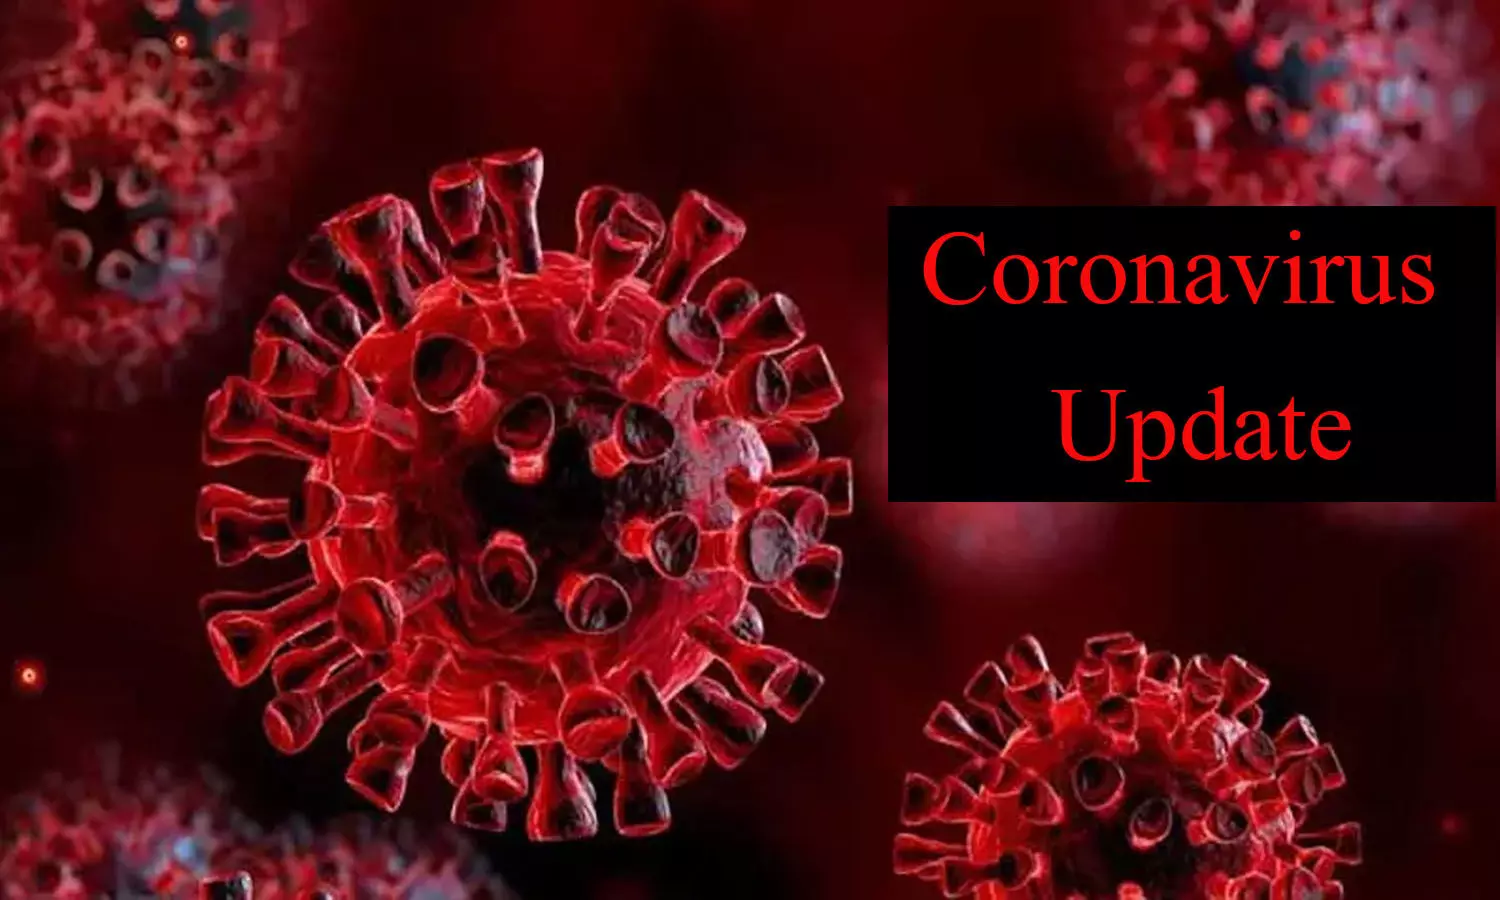 coronavirus update in uttar pradesh